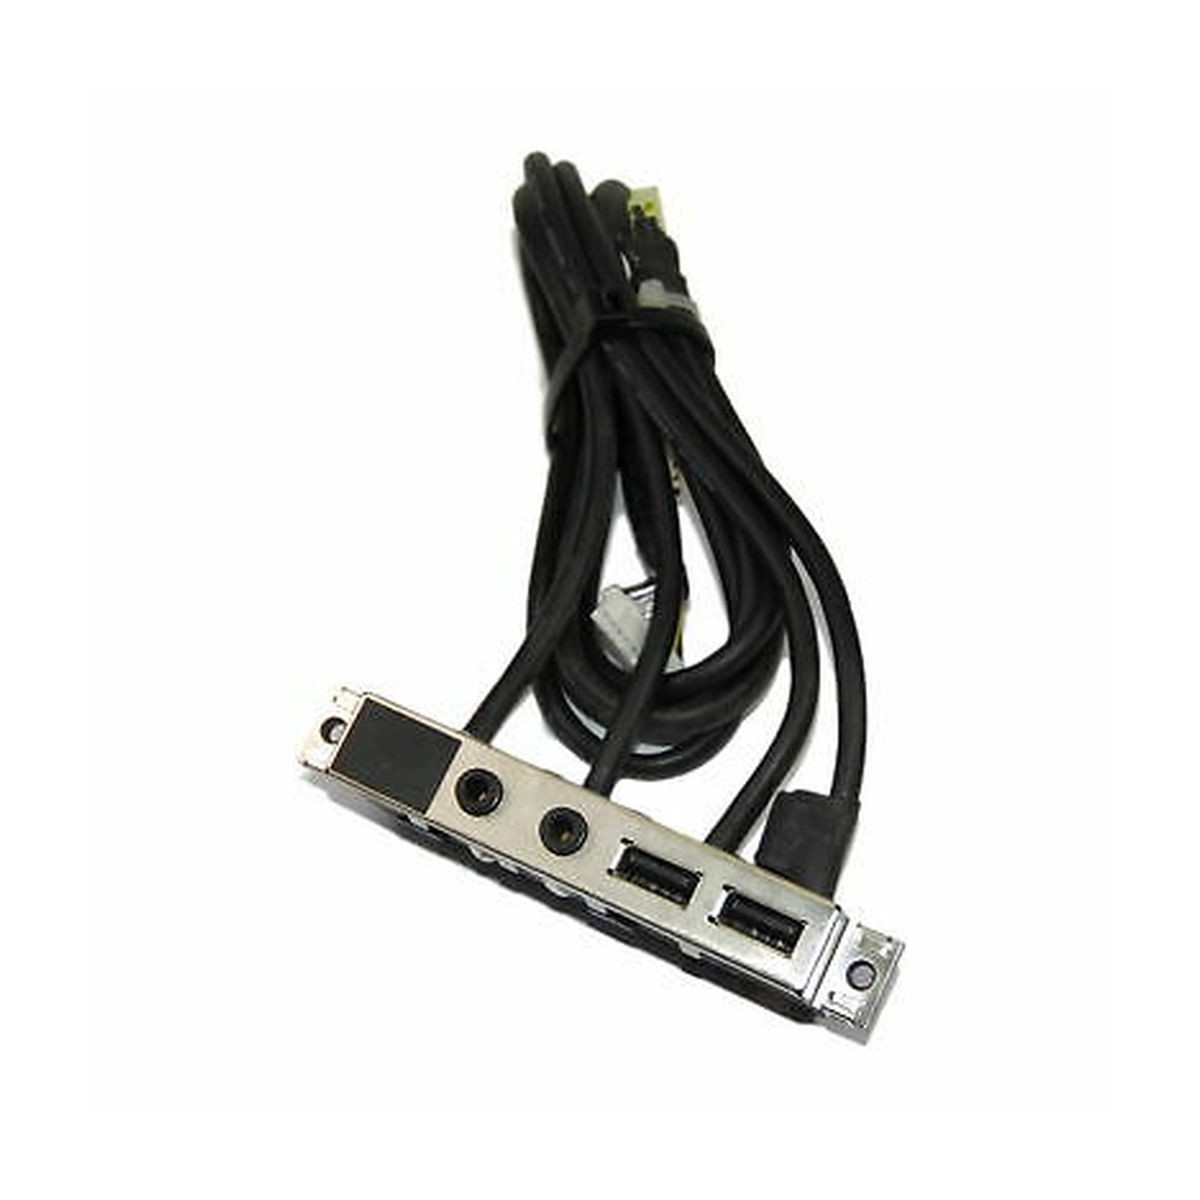 FRONT USB PANEL HP XW4600 390373-002